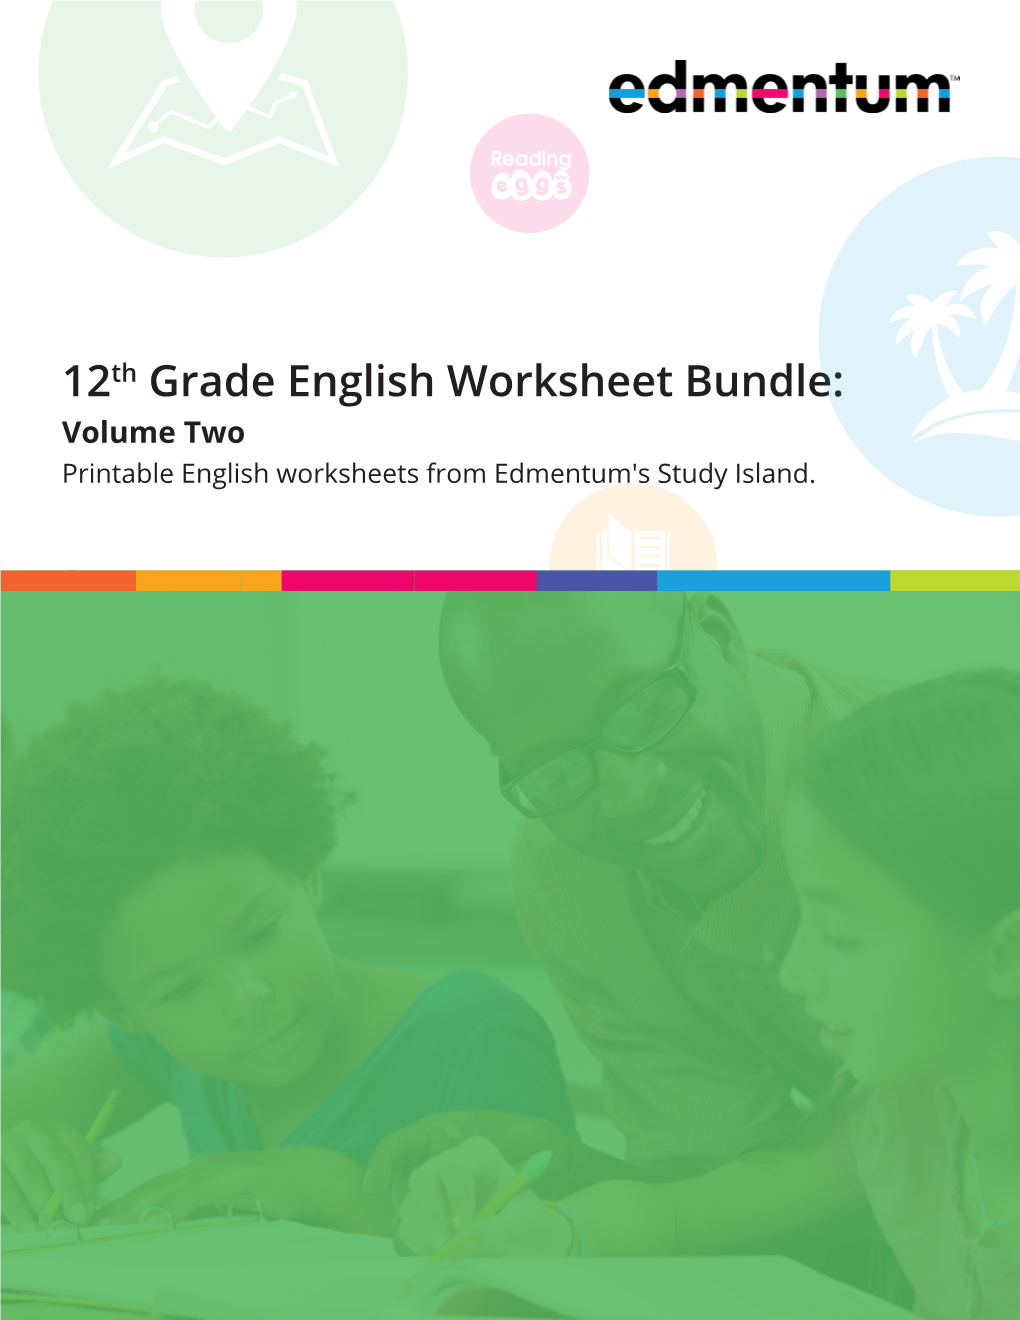 12th-grade-english-worksheet-bundle-volume-two-printable-english